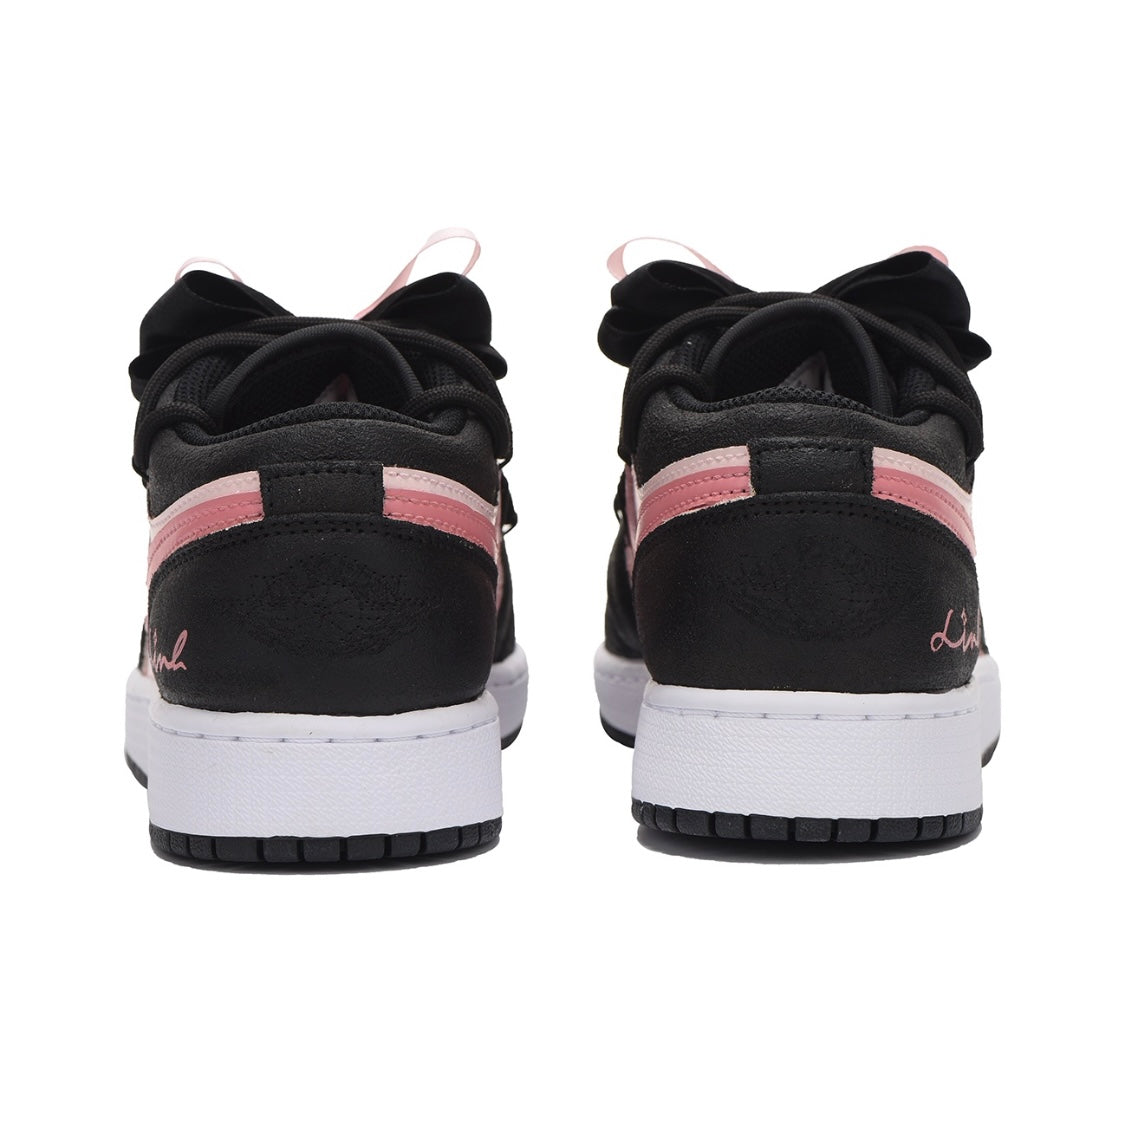 Air Jordan 1 "Black Pink"